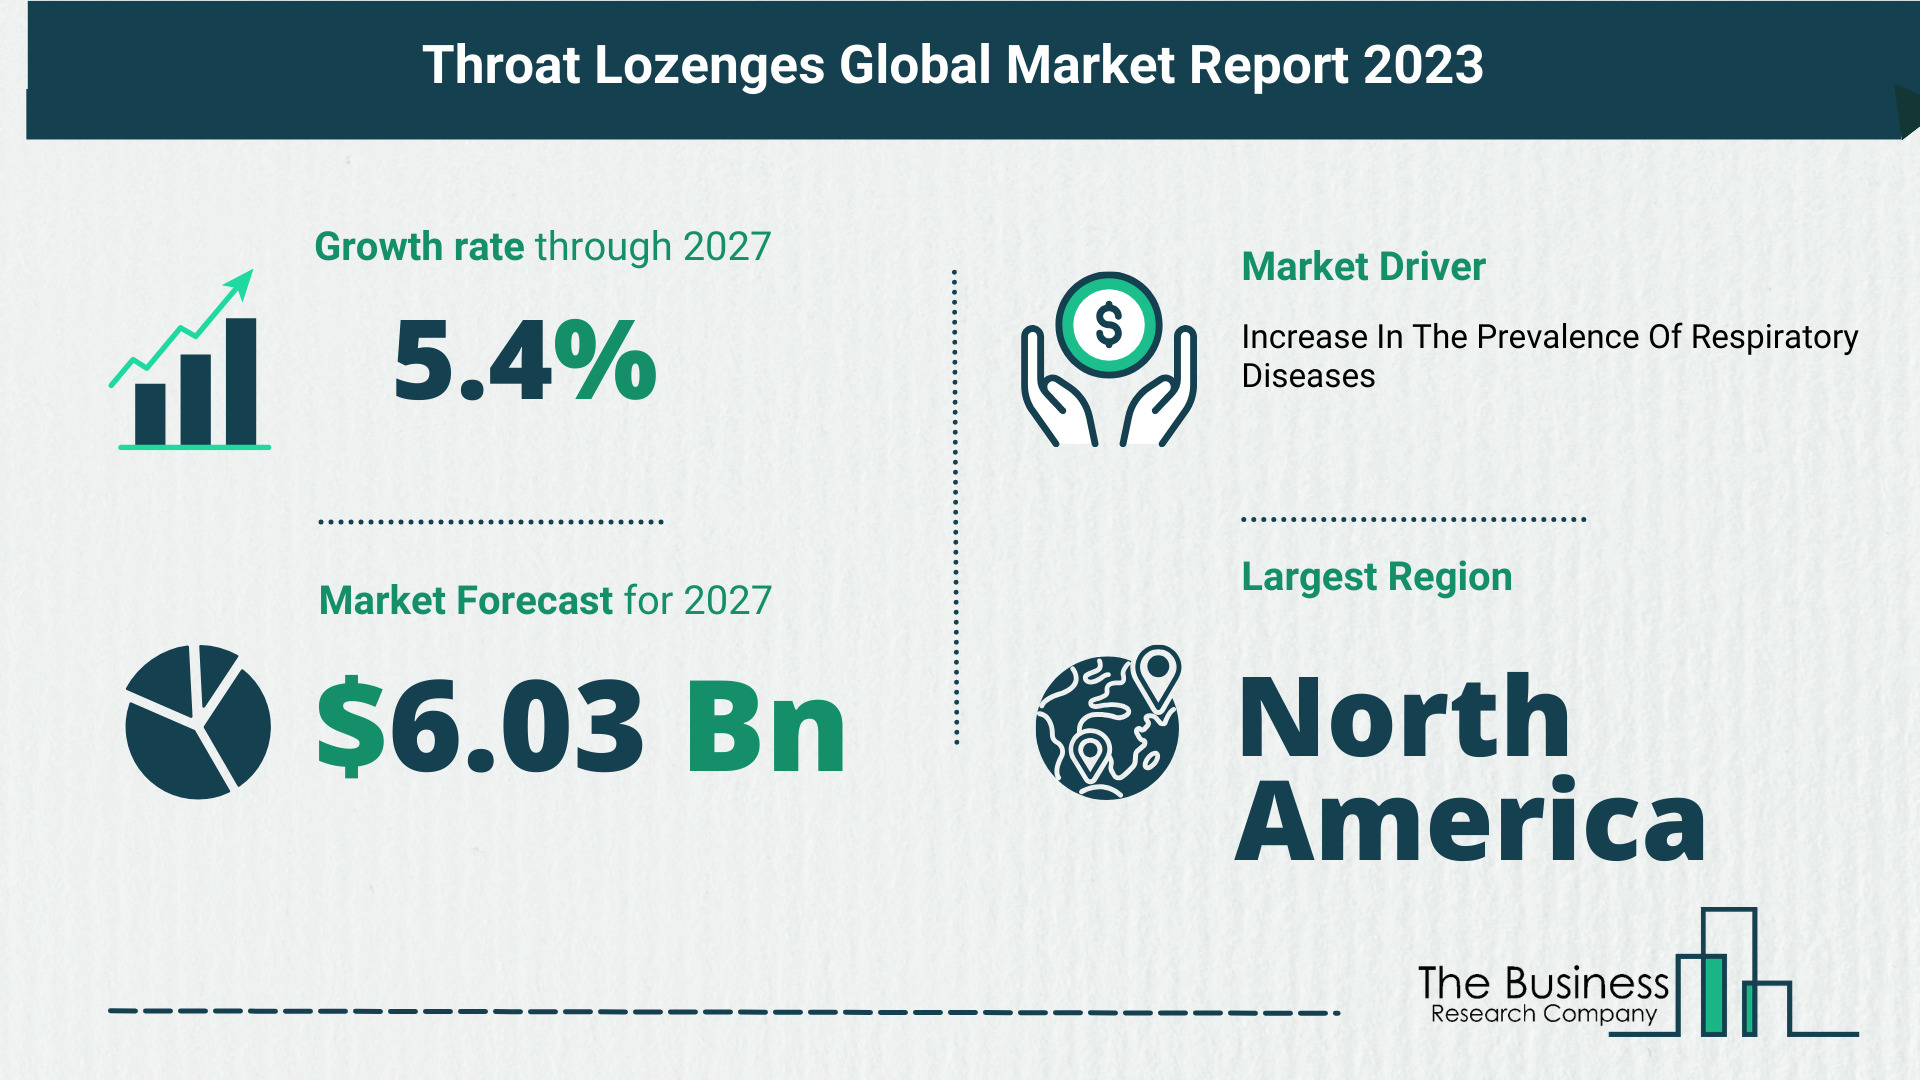 Throat Lozenges Market Forecast 2023: Forecast Market Size, Drivers And Key Segments